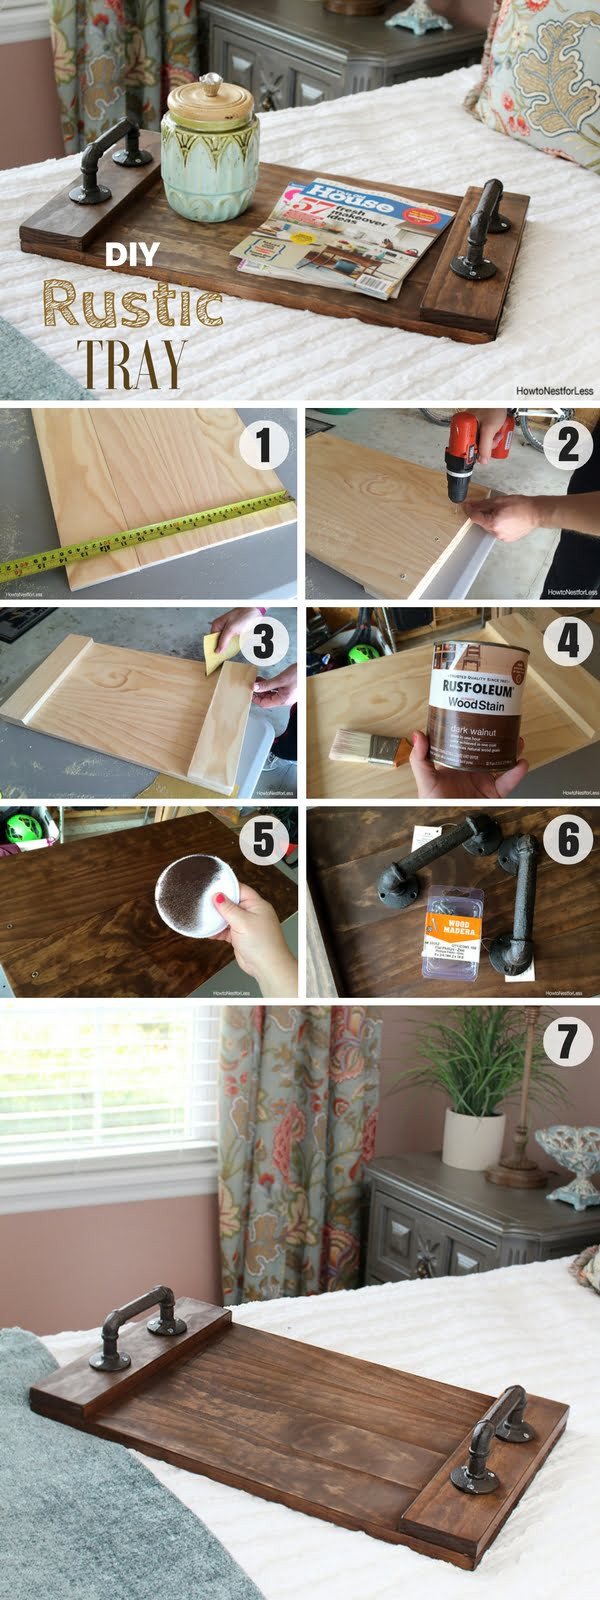 Easy Wood Craft Ideas
 18 Easy DIY Wood Craft Project Ideas on a Bud